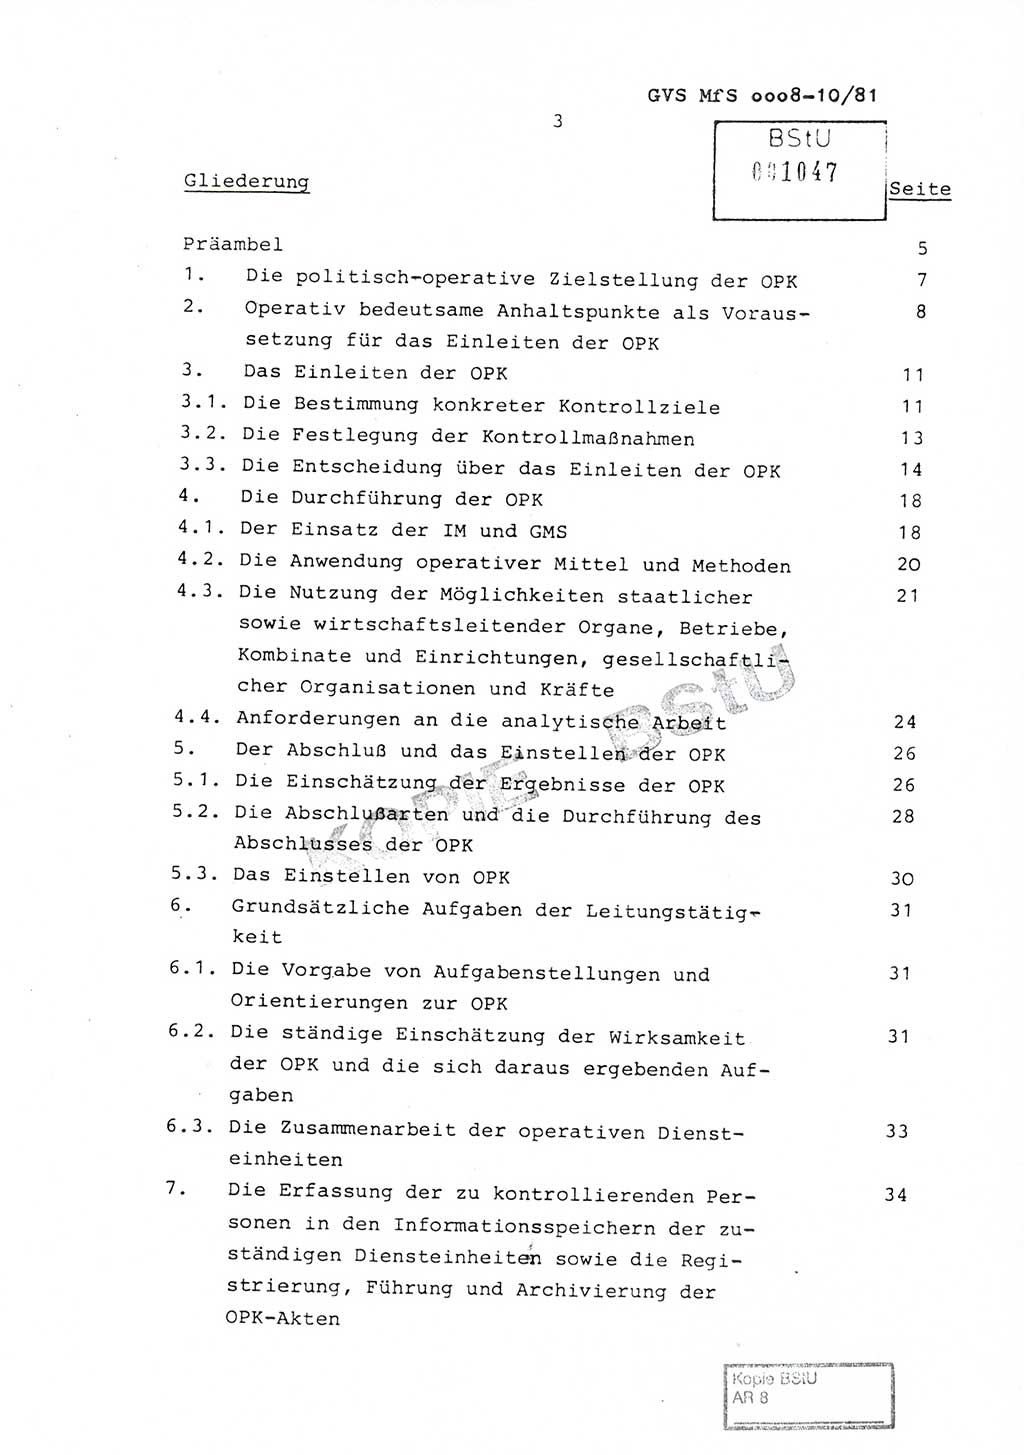 Richtlinie Nr. 1/81 über die operative Personenkontrolle (OPK), Ministerium für Staatssicherheit (MfS) [Deutsche Demokratische Republik (DDR)], Der Minister, Geheime Verschlußsache (GVS) ooo8-10/81, Berlin 1981, Blatt 3 (RL 1/81 OPK DDR MfS Min. GVS ooo8-10/81 1981, Bl. 3)